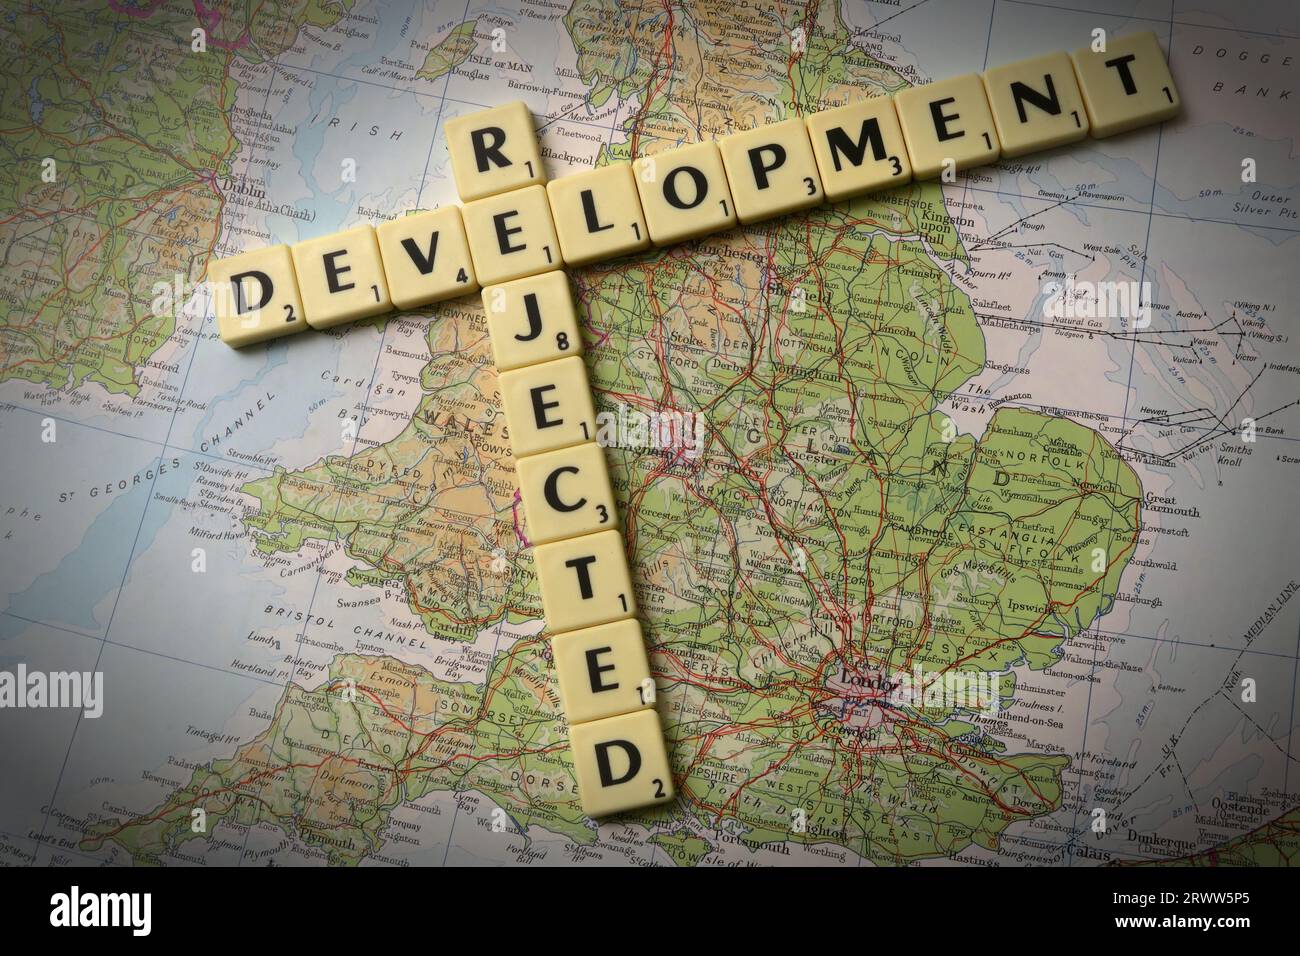 Développement rejeté épelé dans des lettres Scrabble et des mots sur une carte de l'Angleterre - développement local et contrôle de la construction Banque D'Images